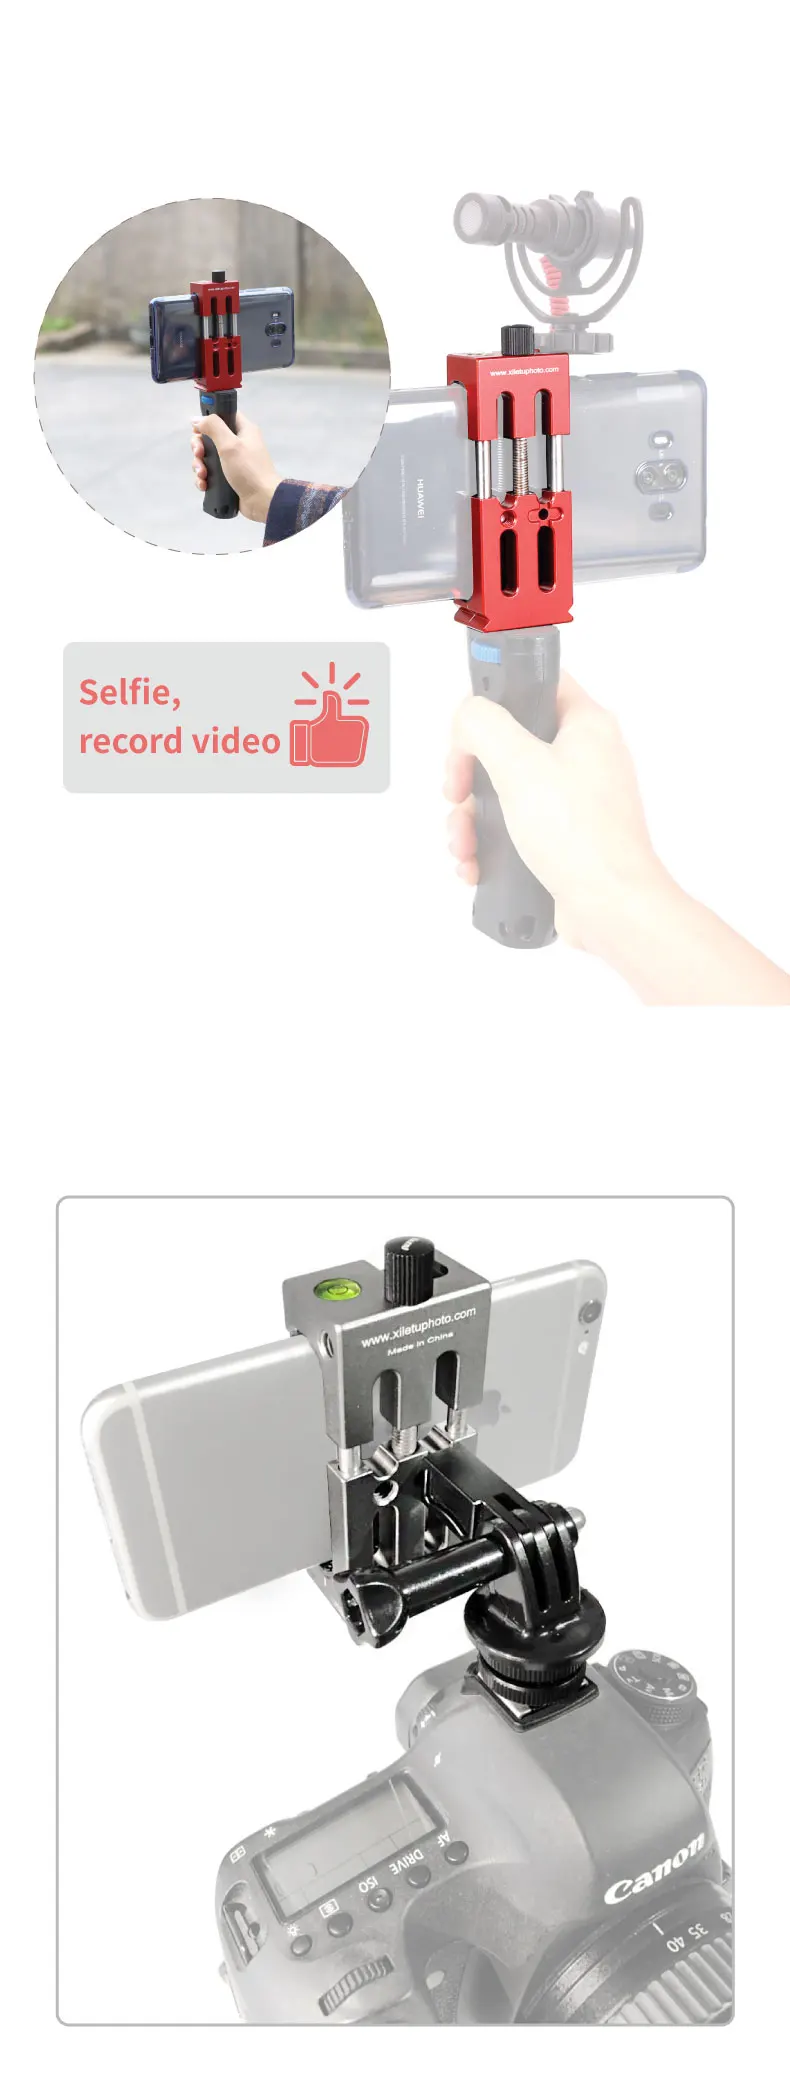 XILETU XJ-8 алюминиевый штатив для мобильного телефона держатель зажима с горячей башмаком w ручка Rig клипер для iPhone Vlogging filling